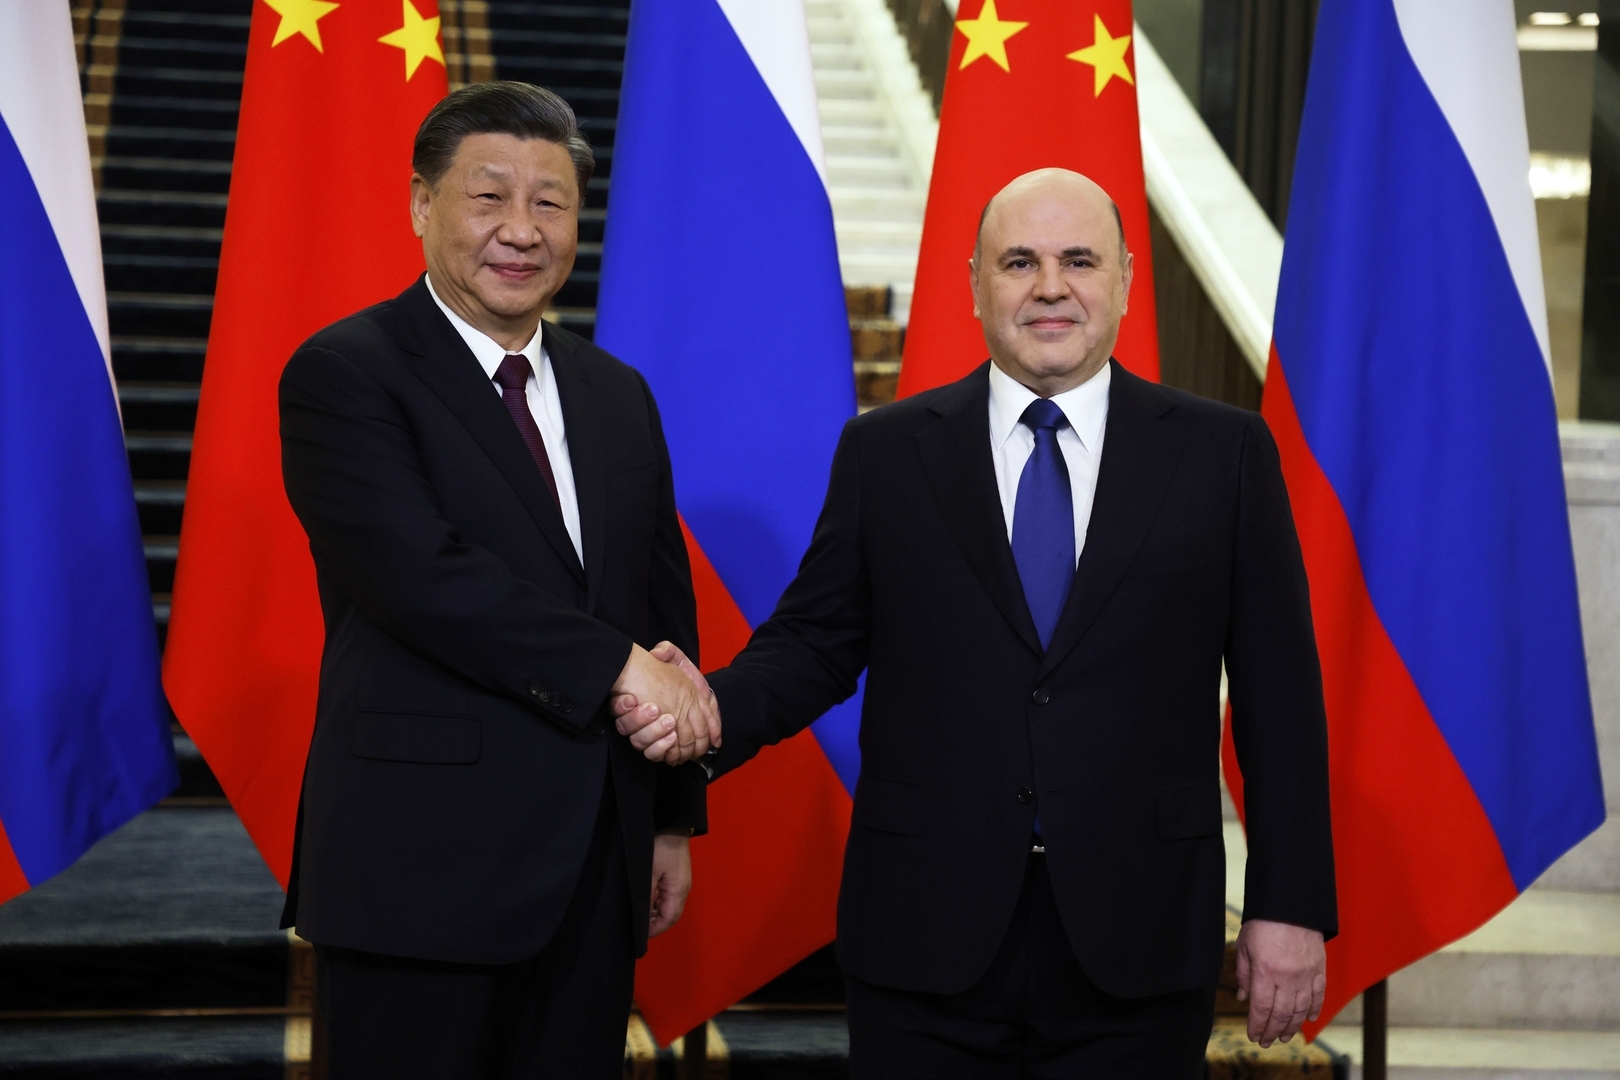 "ضربة روسية صينية للدولار".. محللة مصرية تتحدث عن خطط الصين وروسيا لمواجهة أمريكا